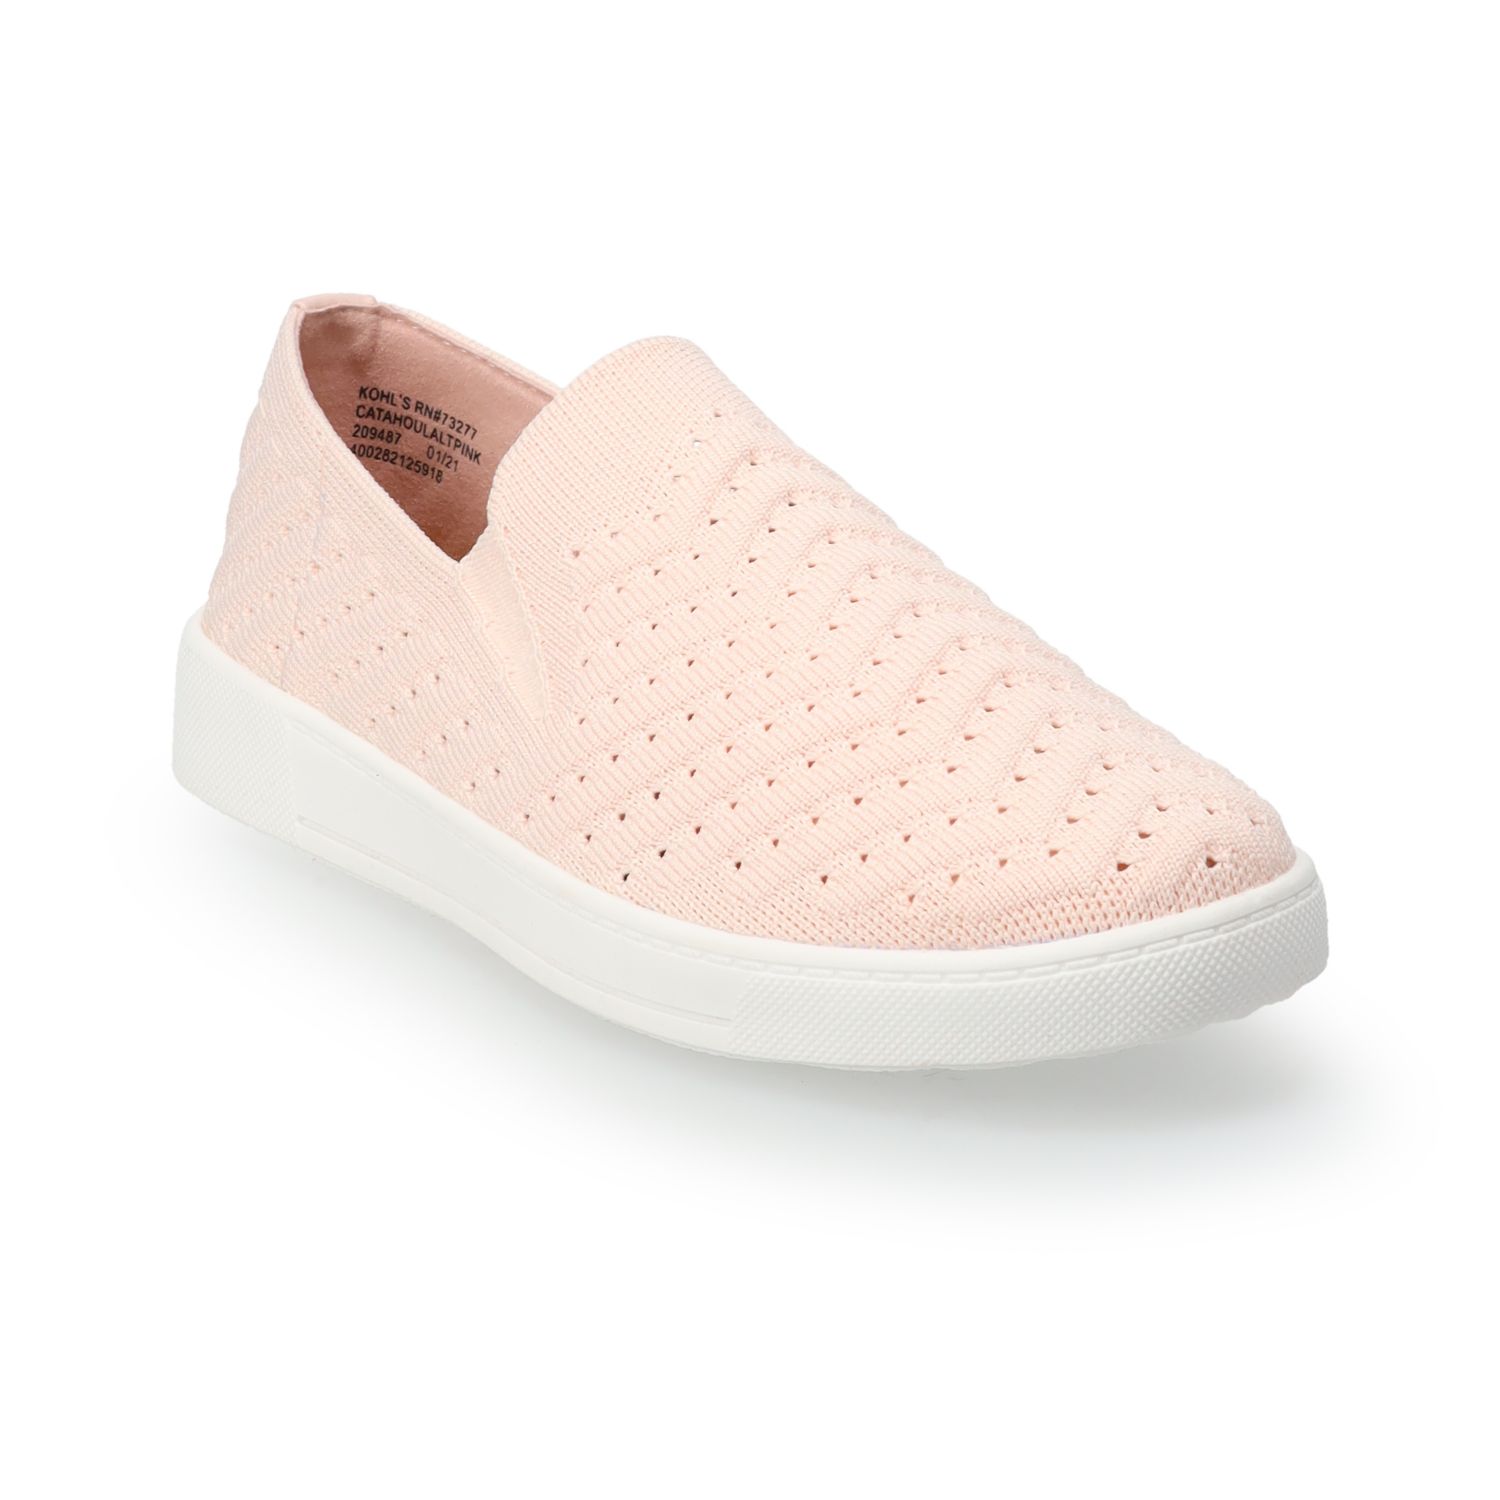 pink slip on sneakers